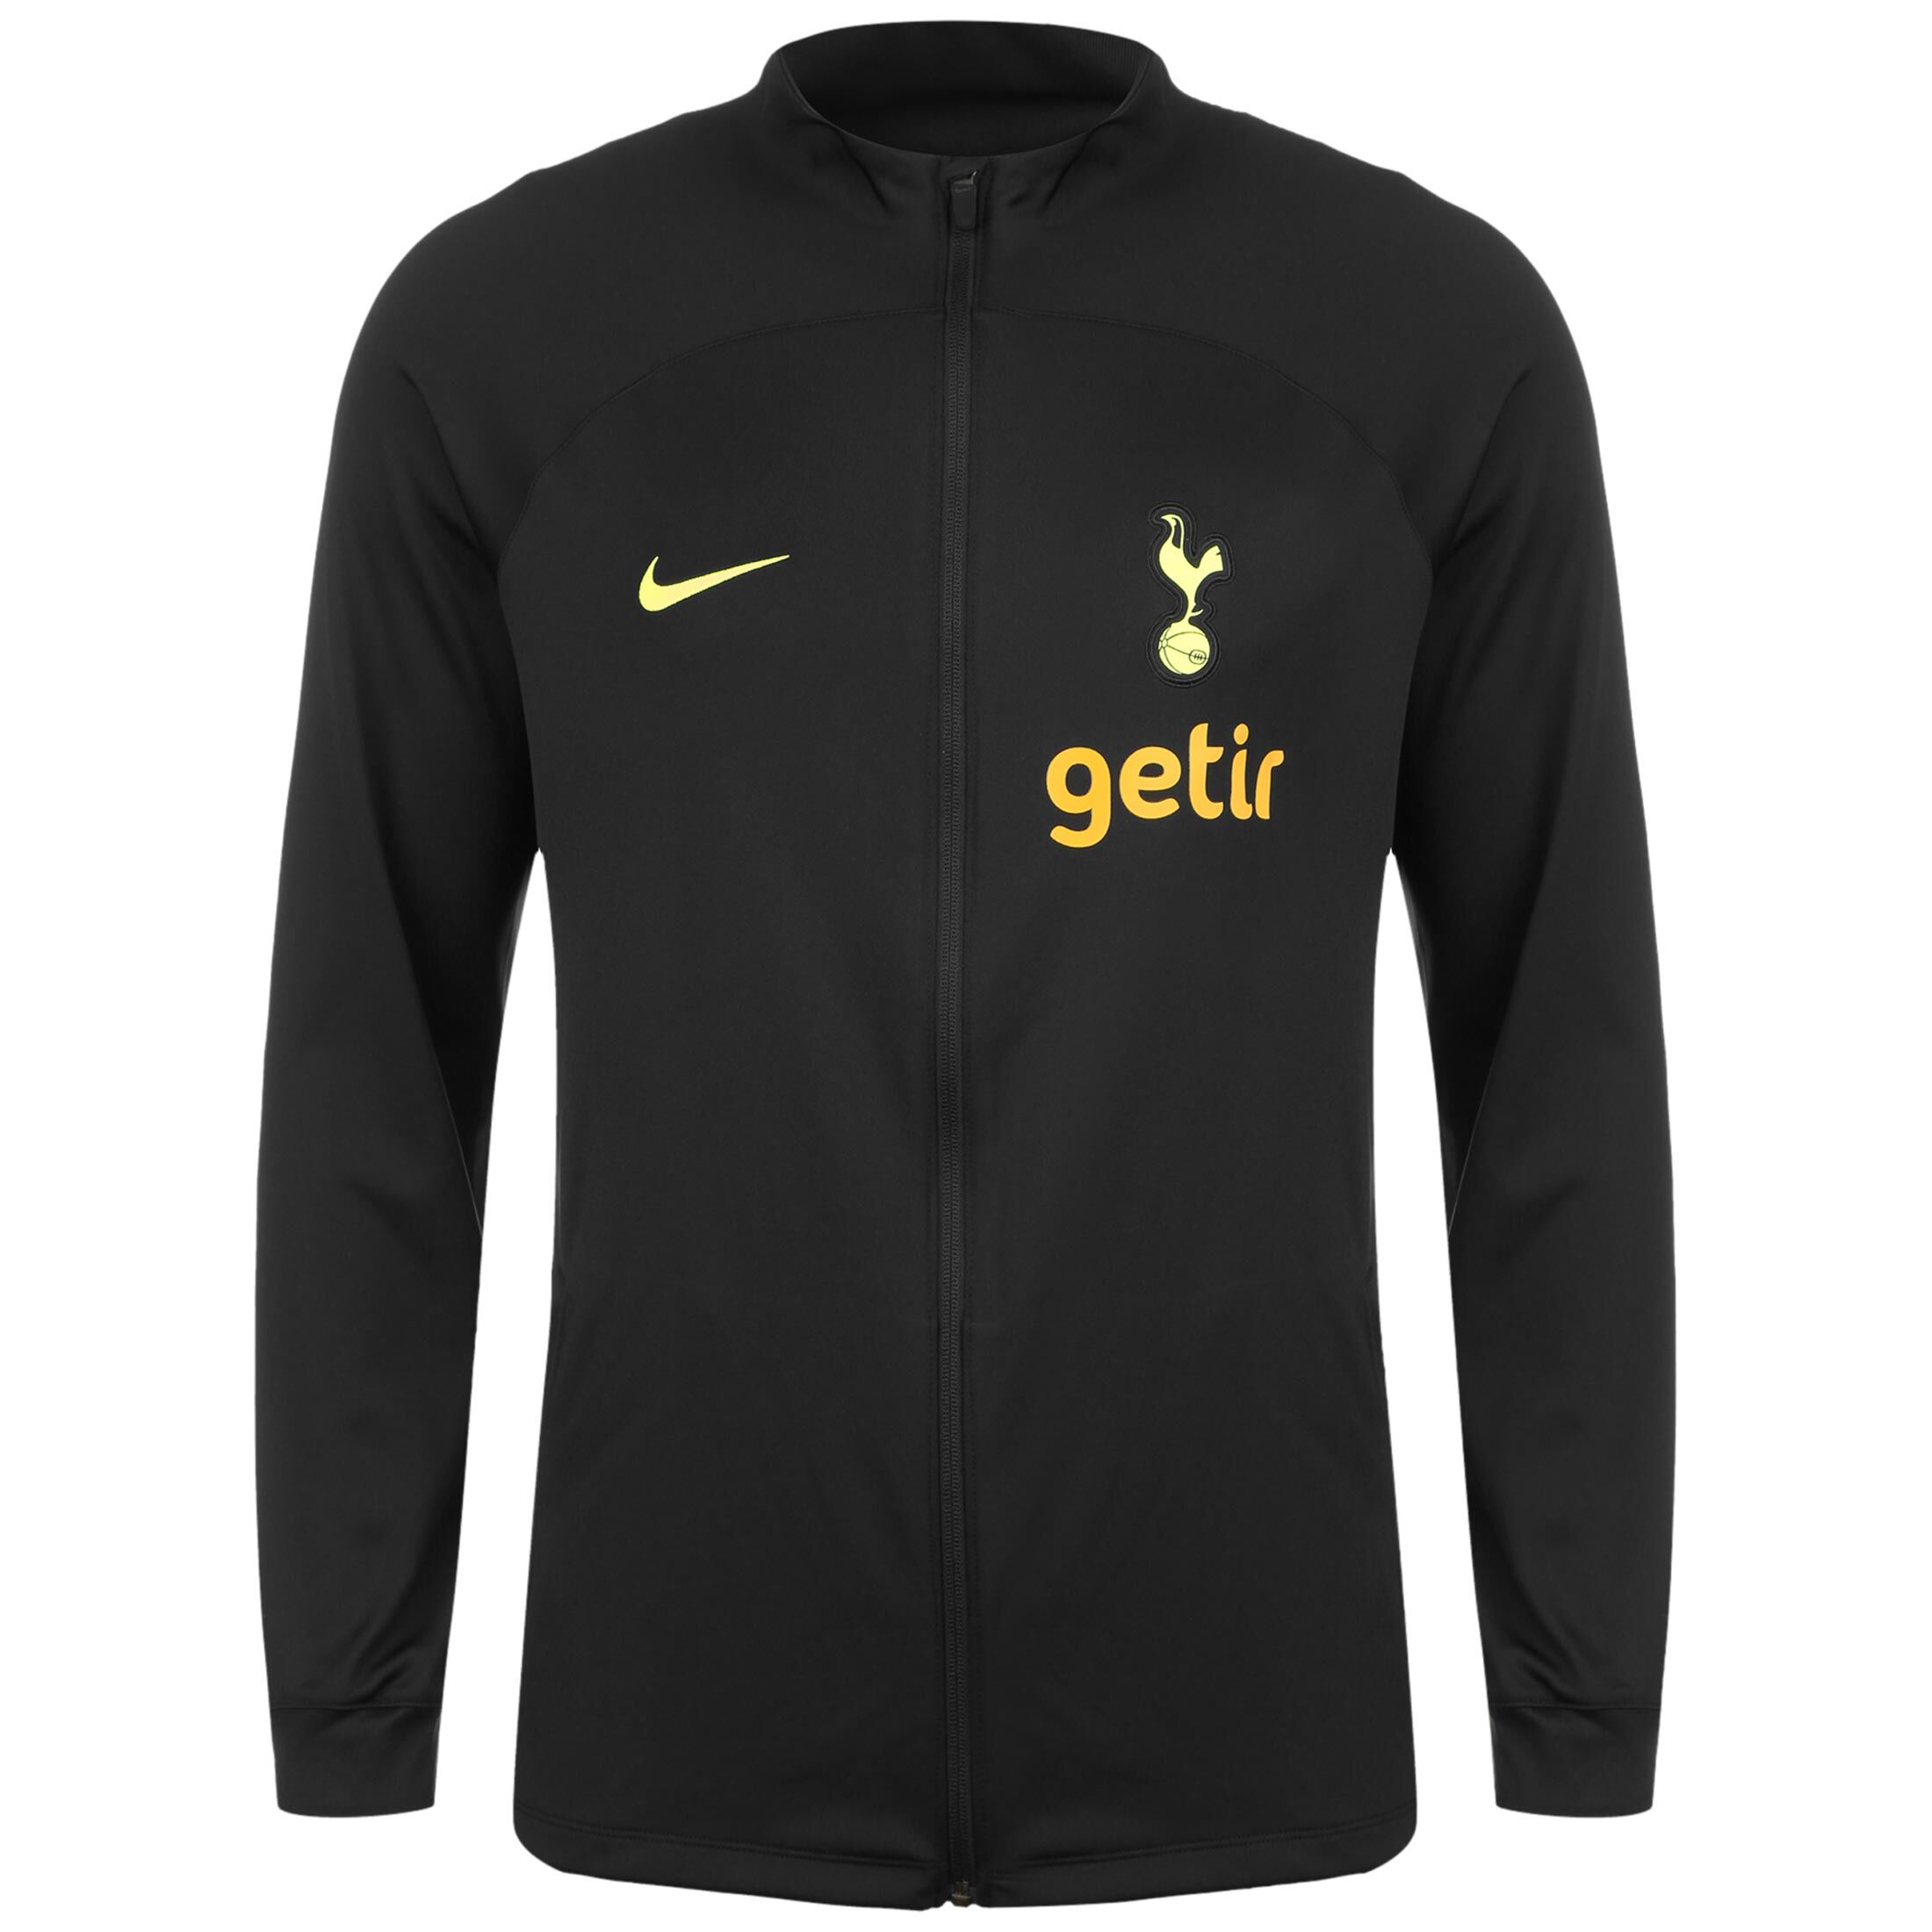 Спортивная куртка Nike Tottenham Hotspur Strike, черный tottenham hotspur 3315526 s белый